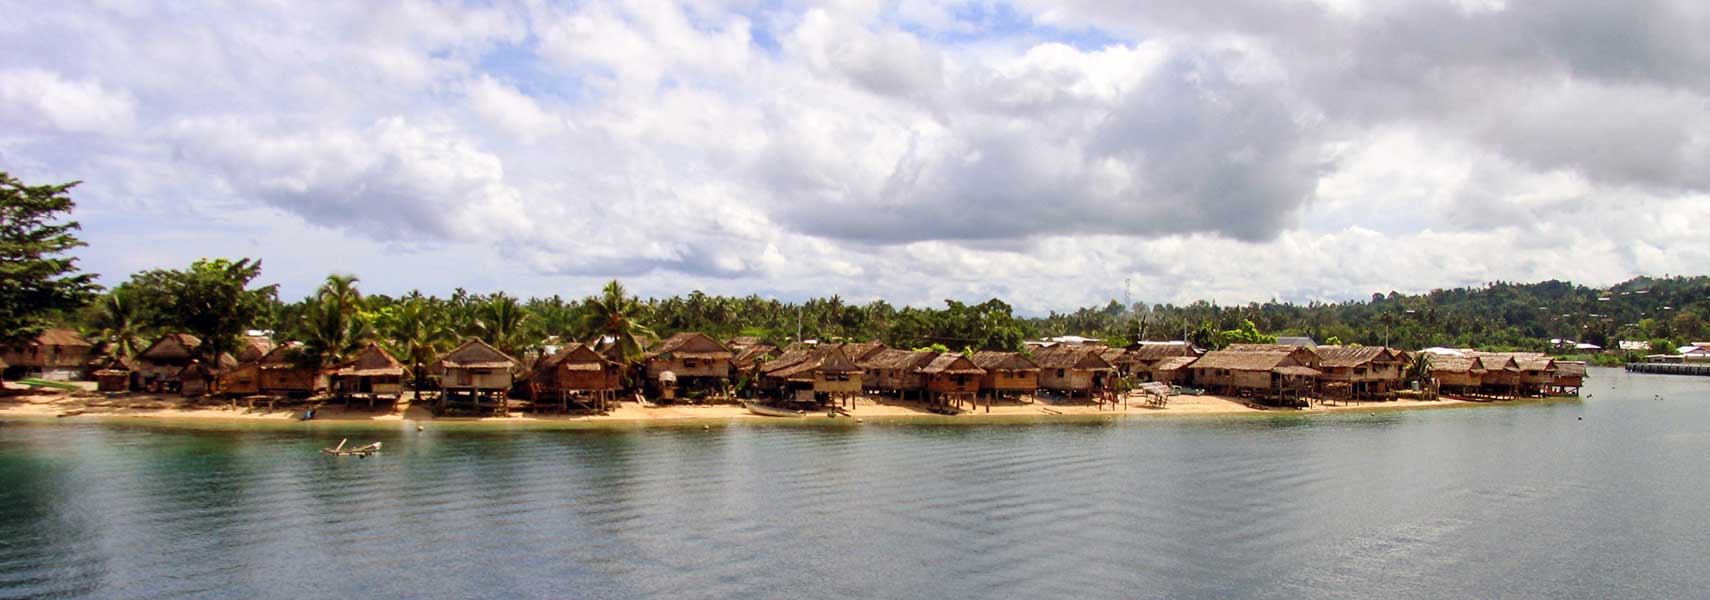 Villages on the coast near Auki, Malaita island